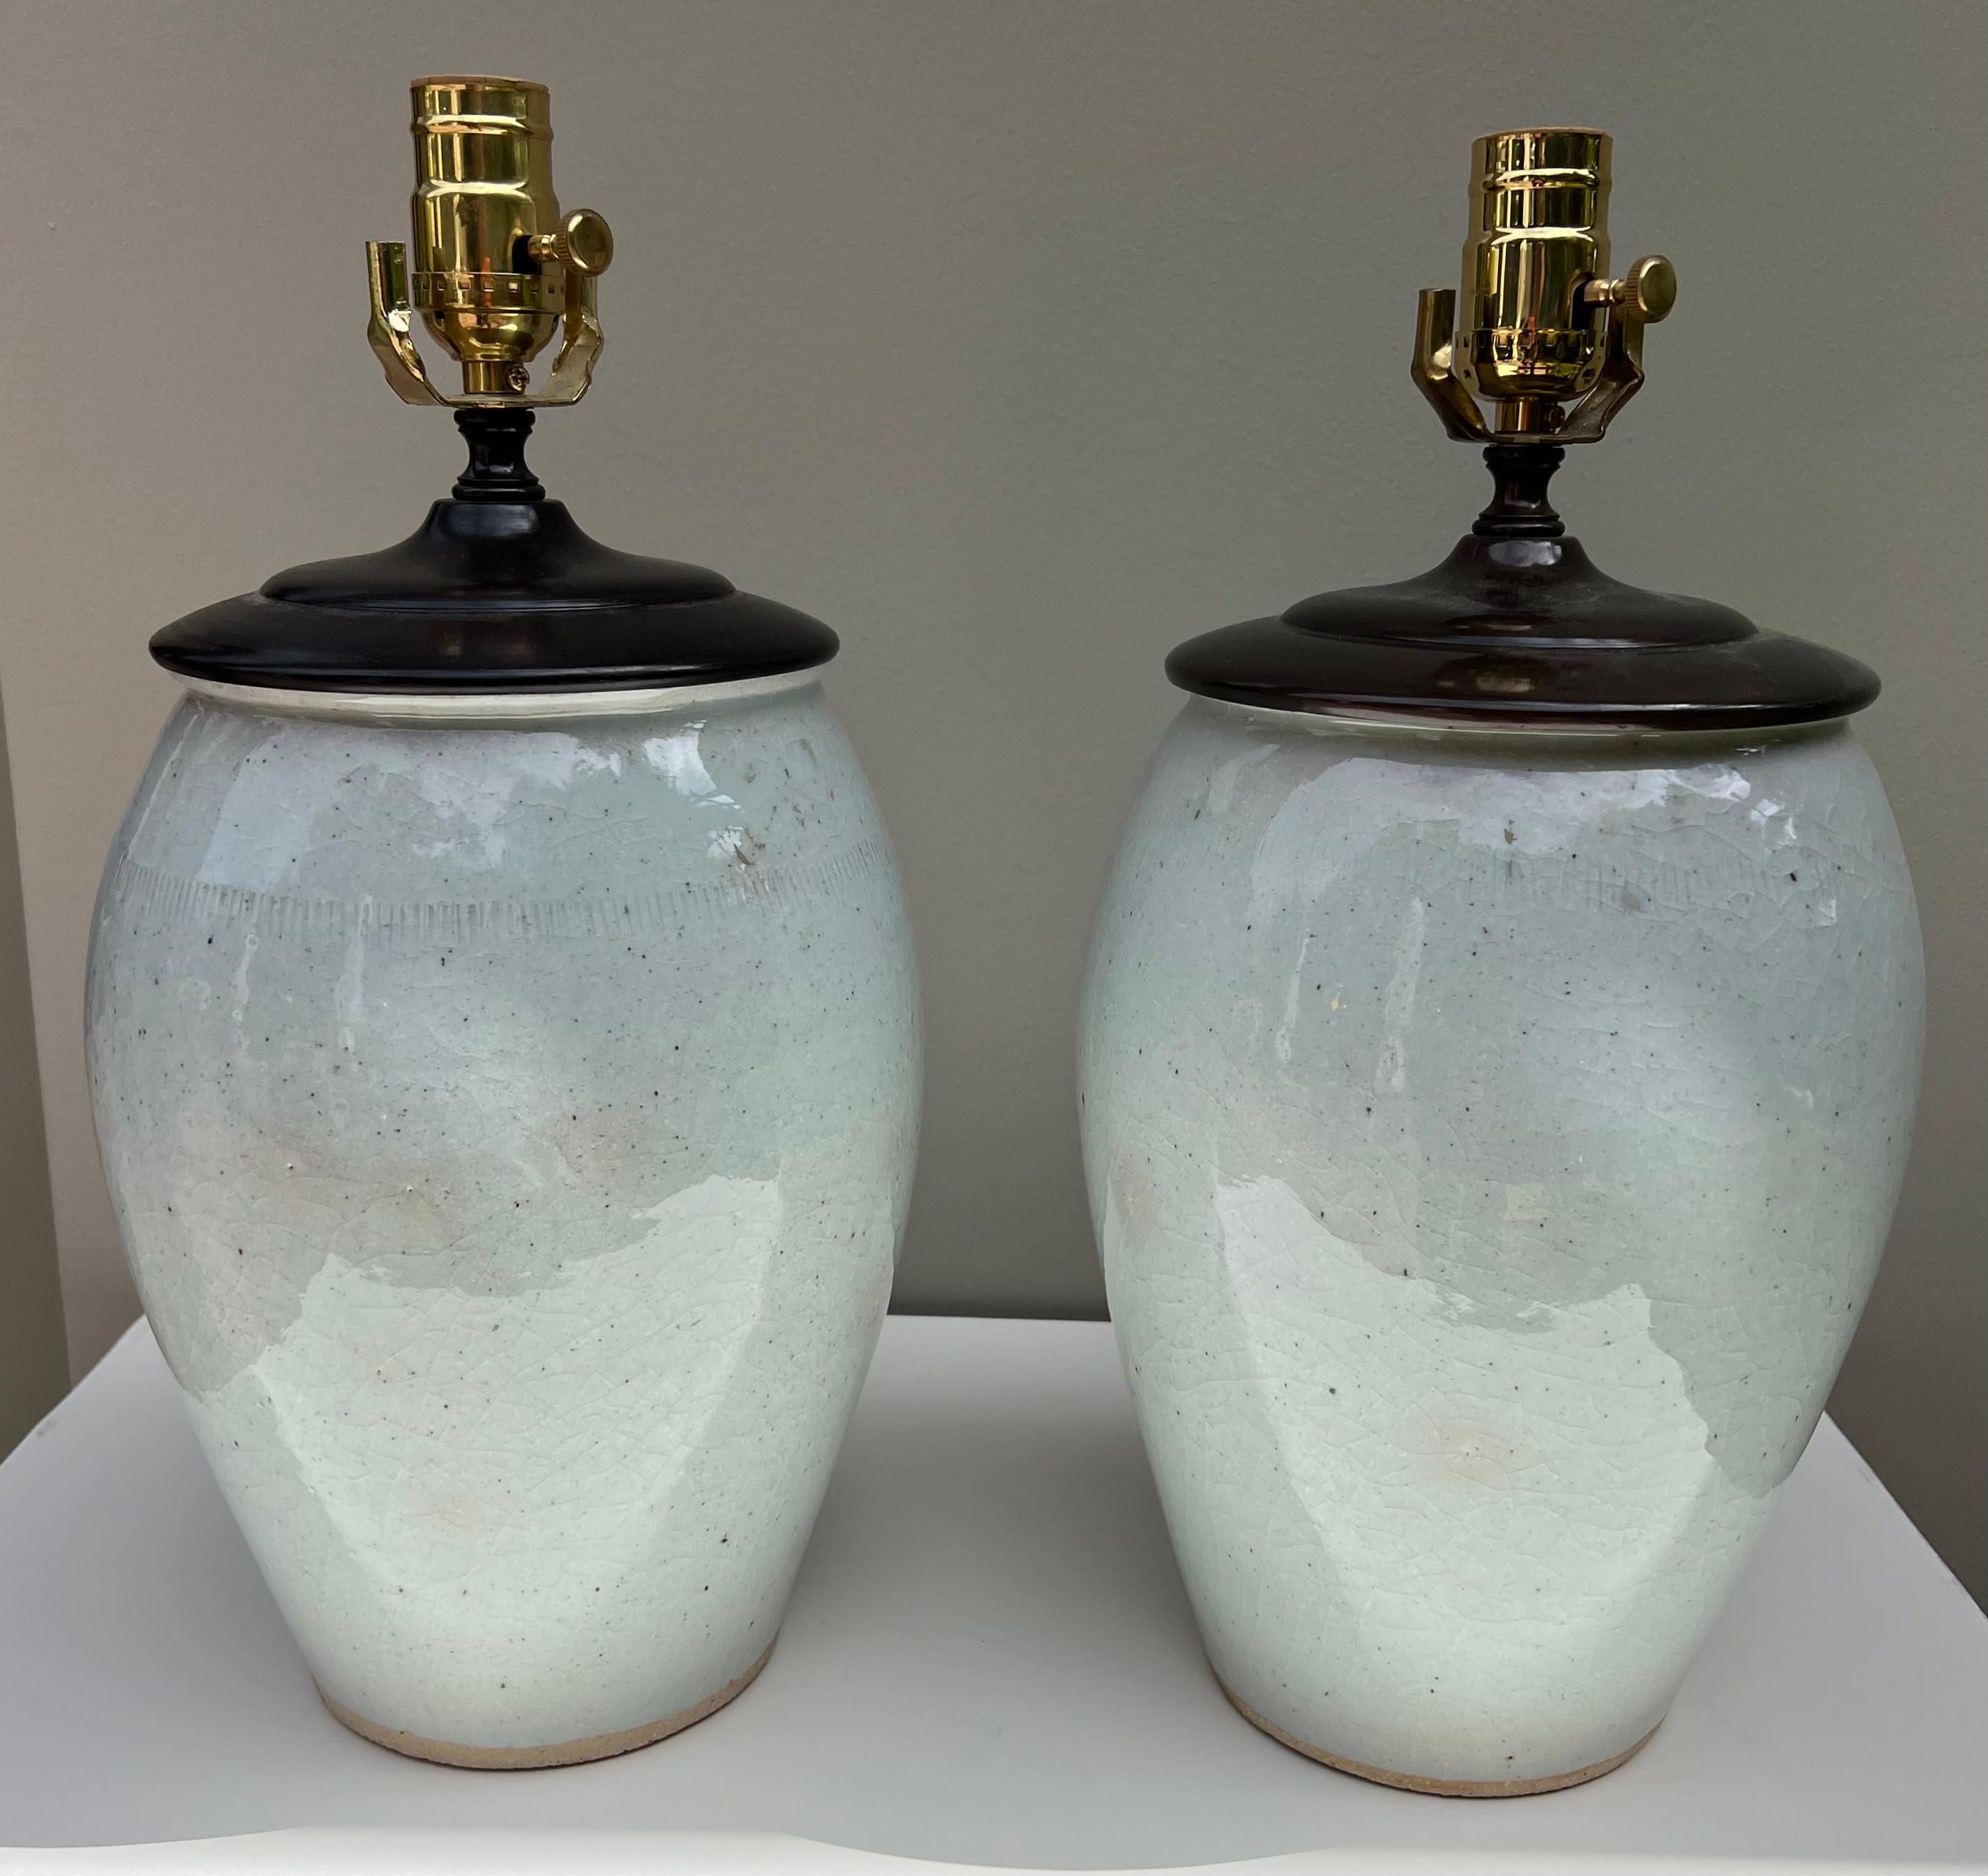 Dieses Paar glasierter Keramiklampen ist eine Übergangslösung und lässt sich leicht in eine Vielzahl von Innenräumen integrieren.
Die Lampen sind neu verkabelt.